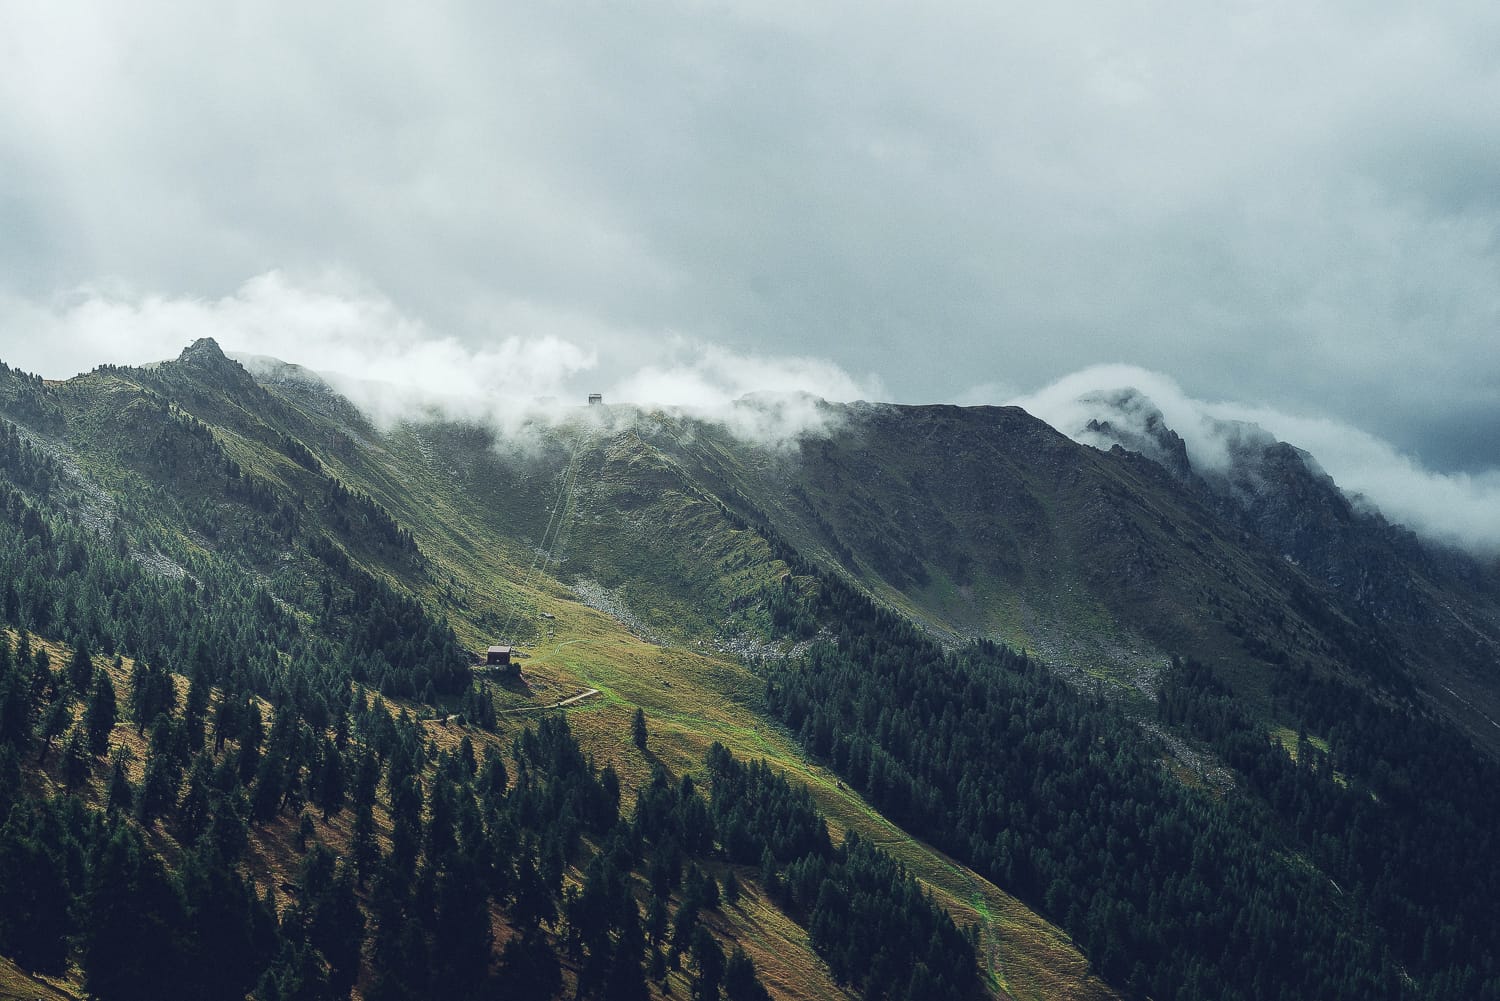 rain clouds around a mountain in Switzerland